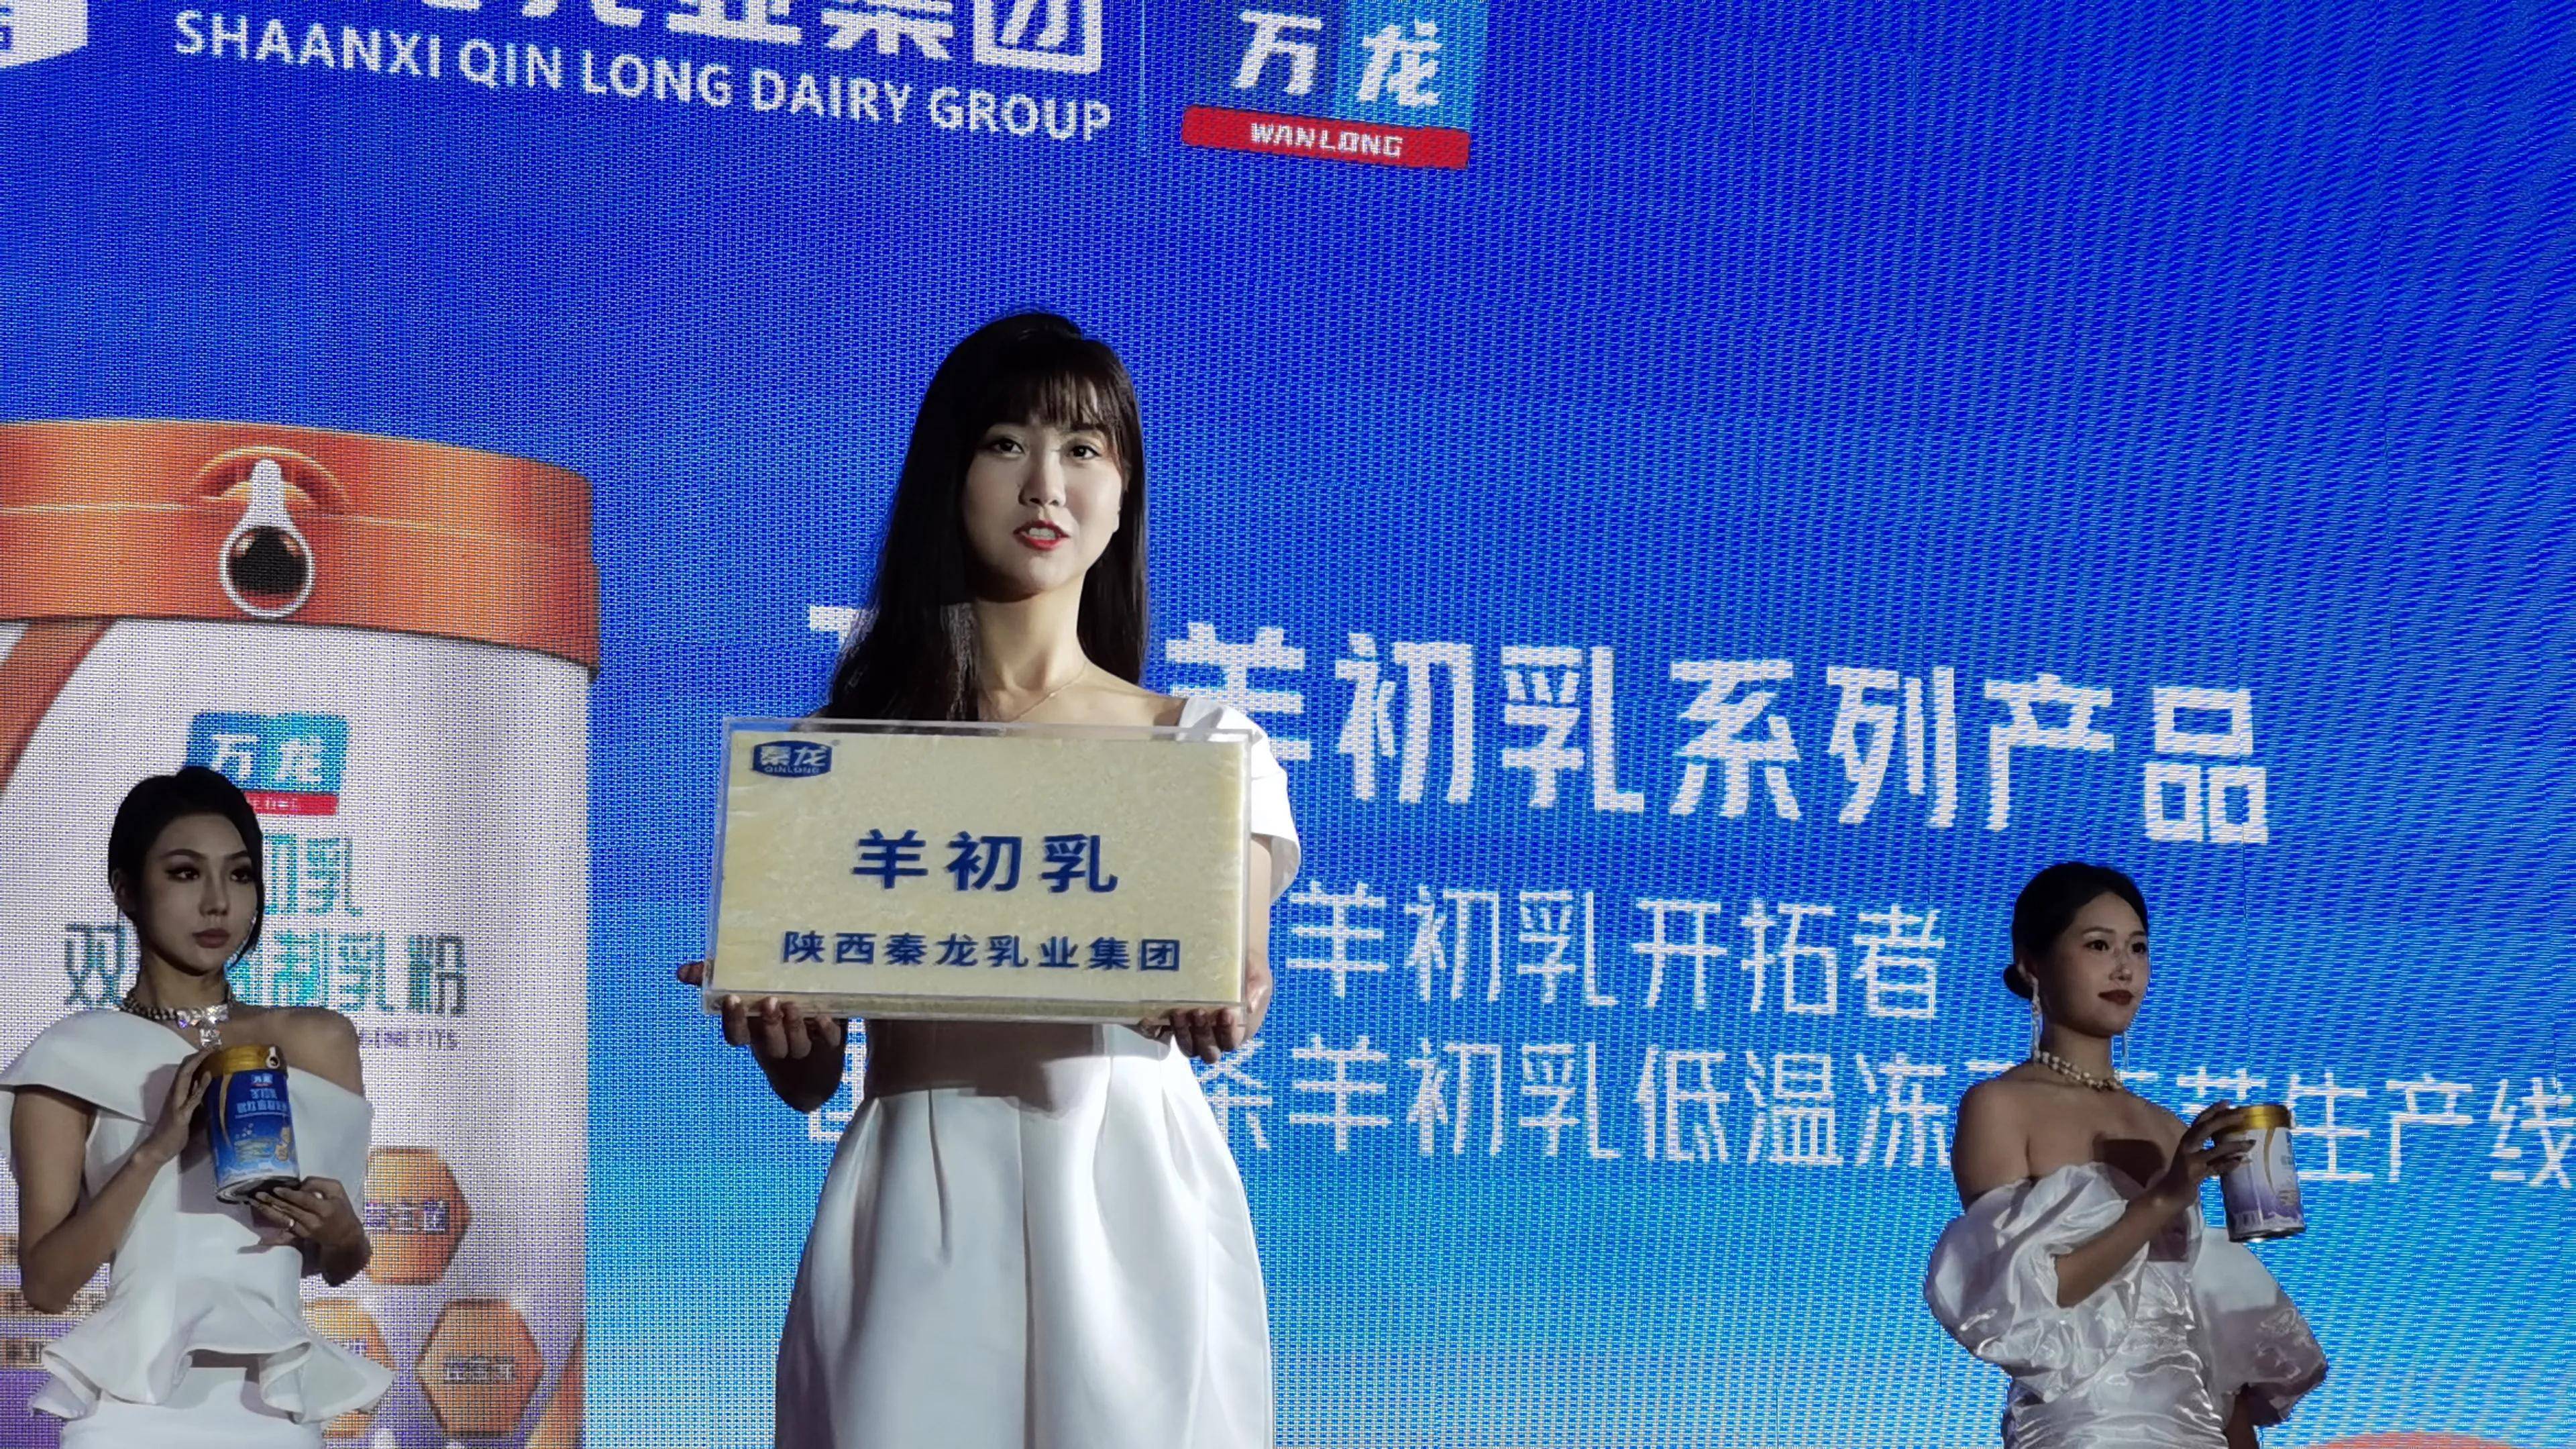 中国羊初乳产业标准化发展高峰论坛在南京举行 